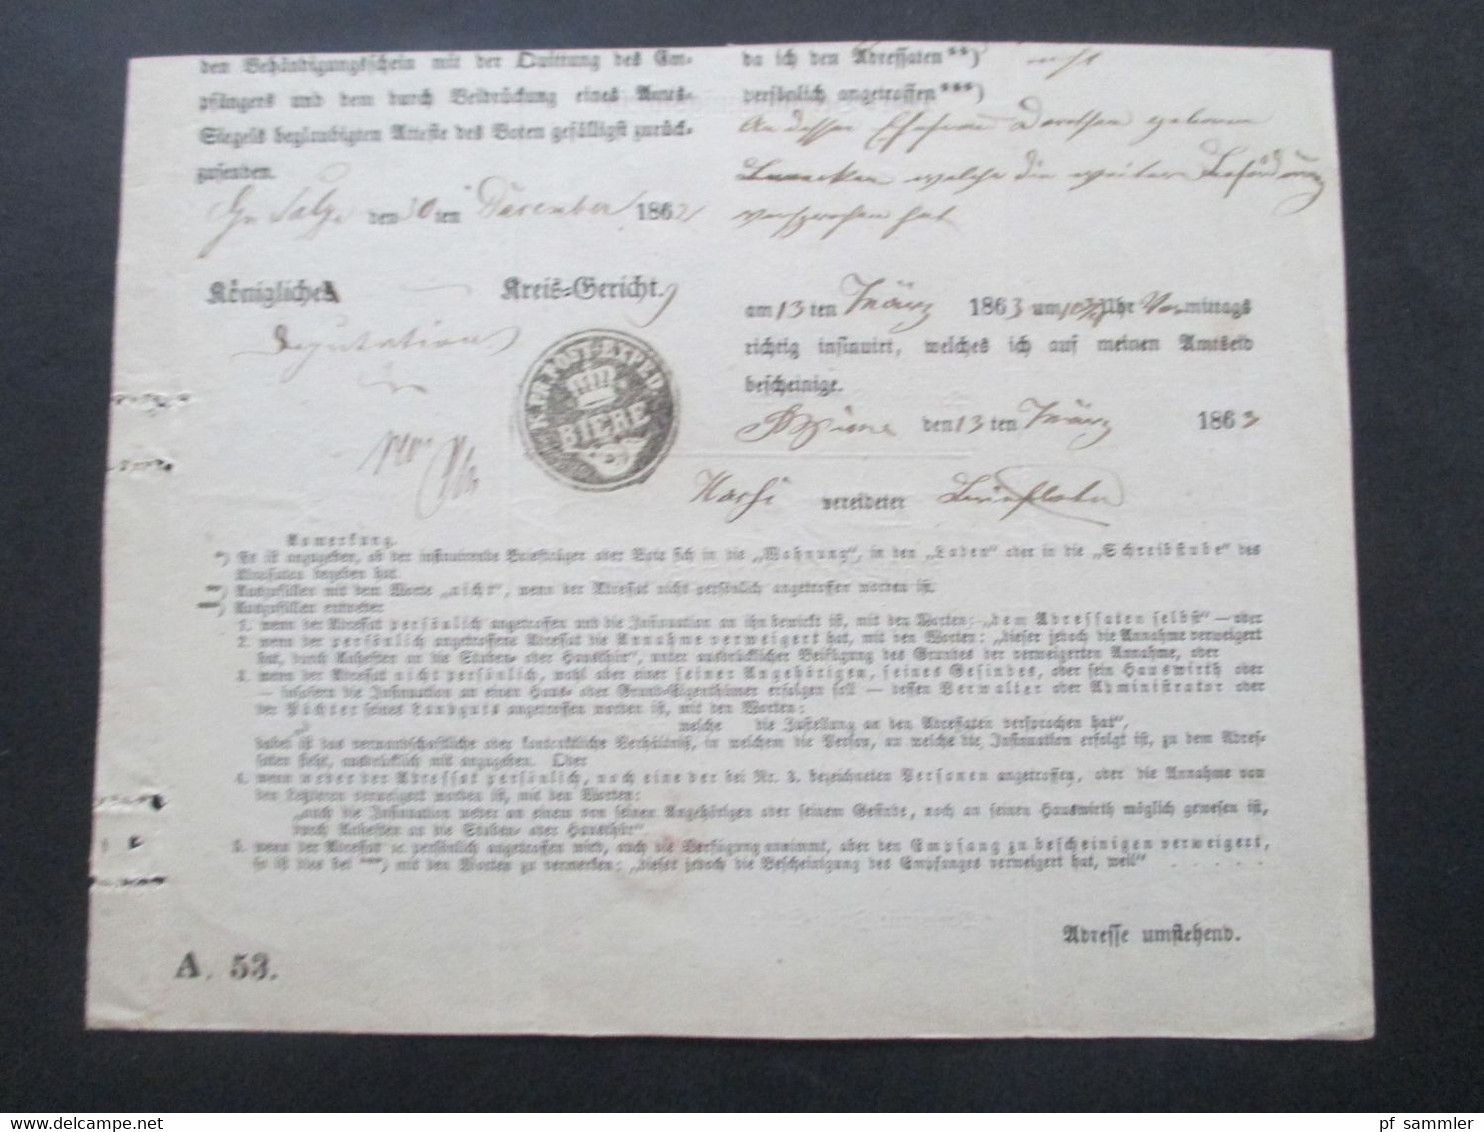 Altdeutschland Sachsen 13.3.1863 Beleg / Post Behändigungsschein Portofreie Justizsache Stp. K. Pr. Post Exped. Biere - Saxony